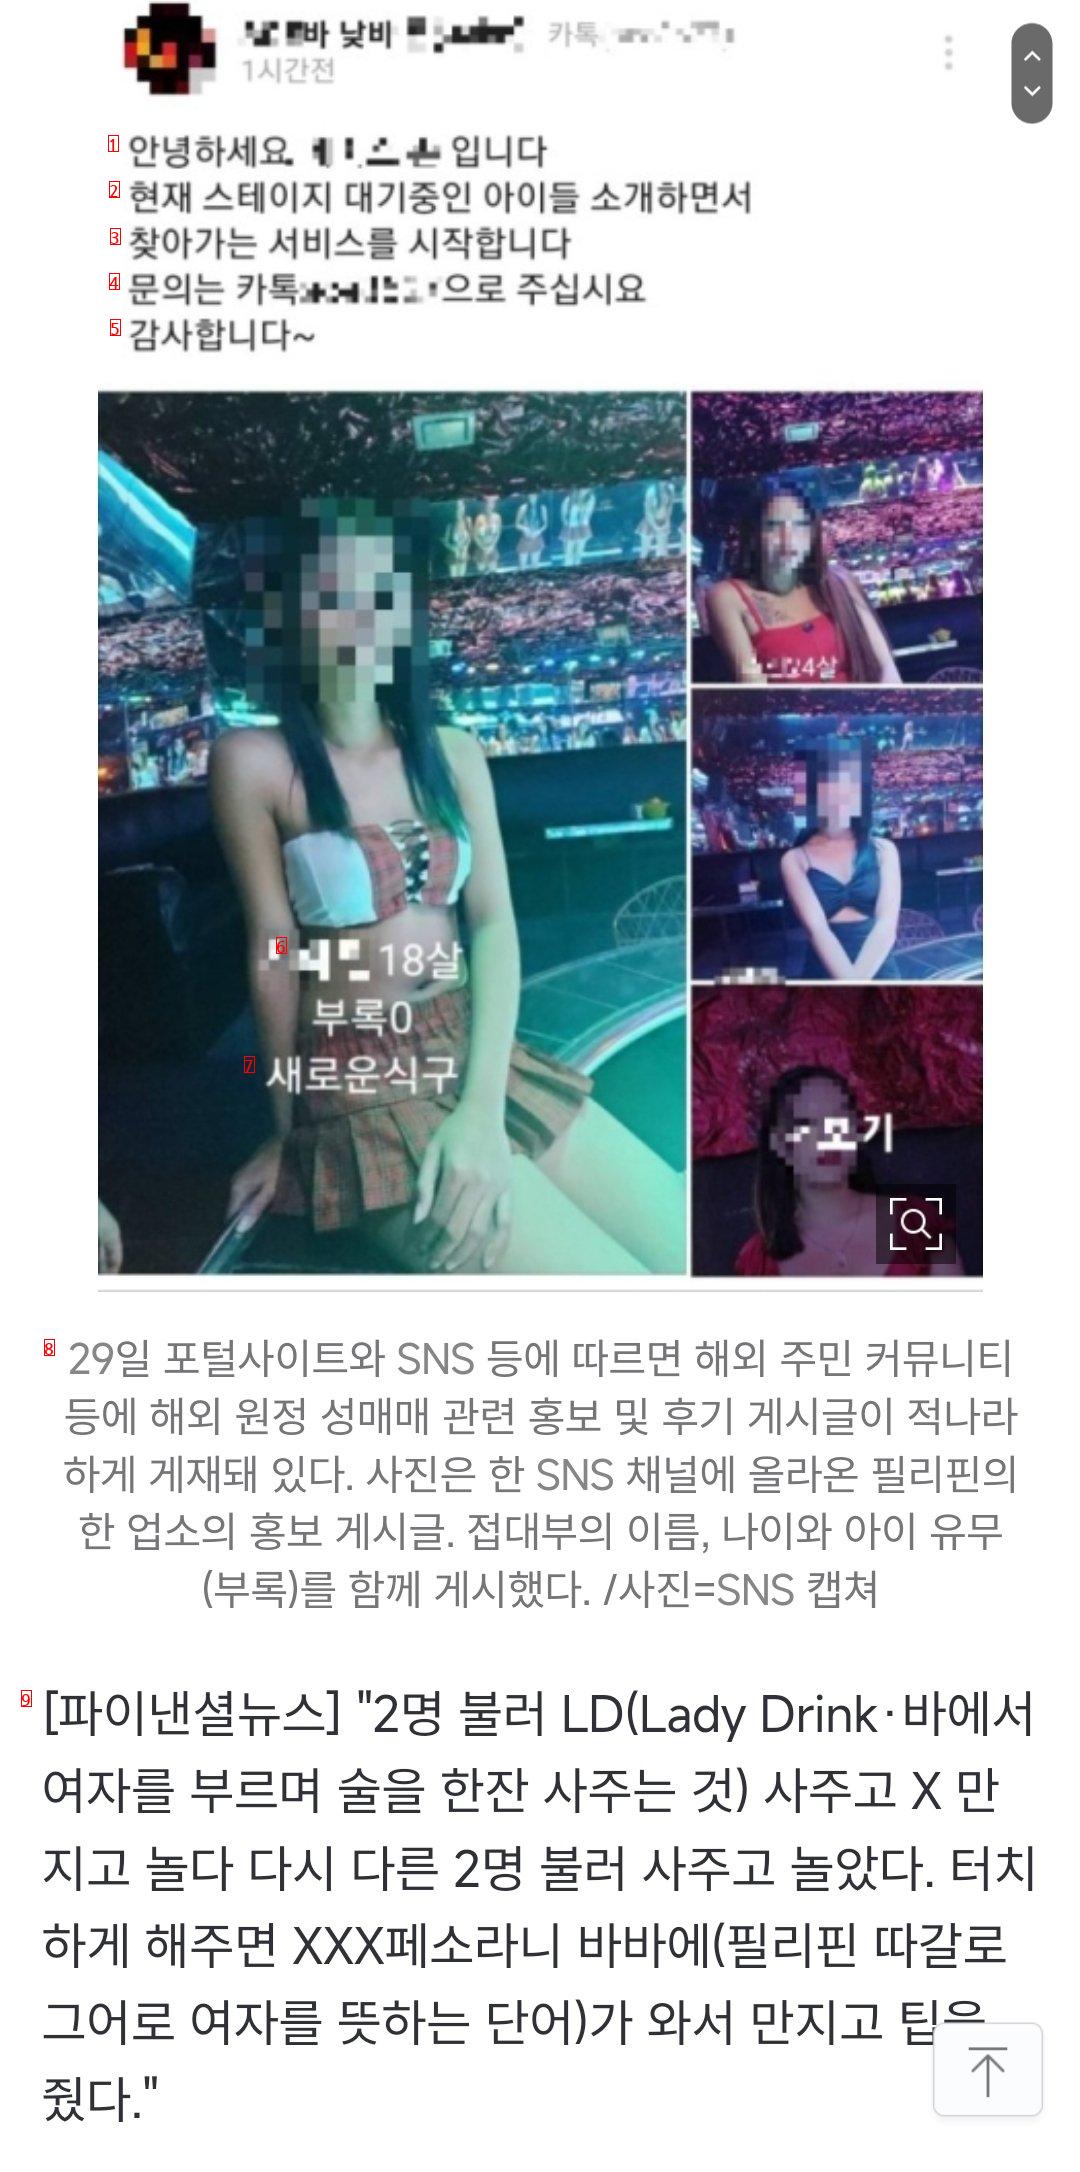 버젓이 올라온 해외 원정 성매매 후기…경찰도 속수무책